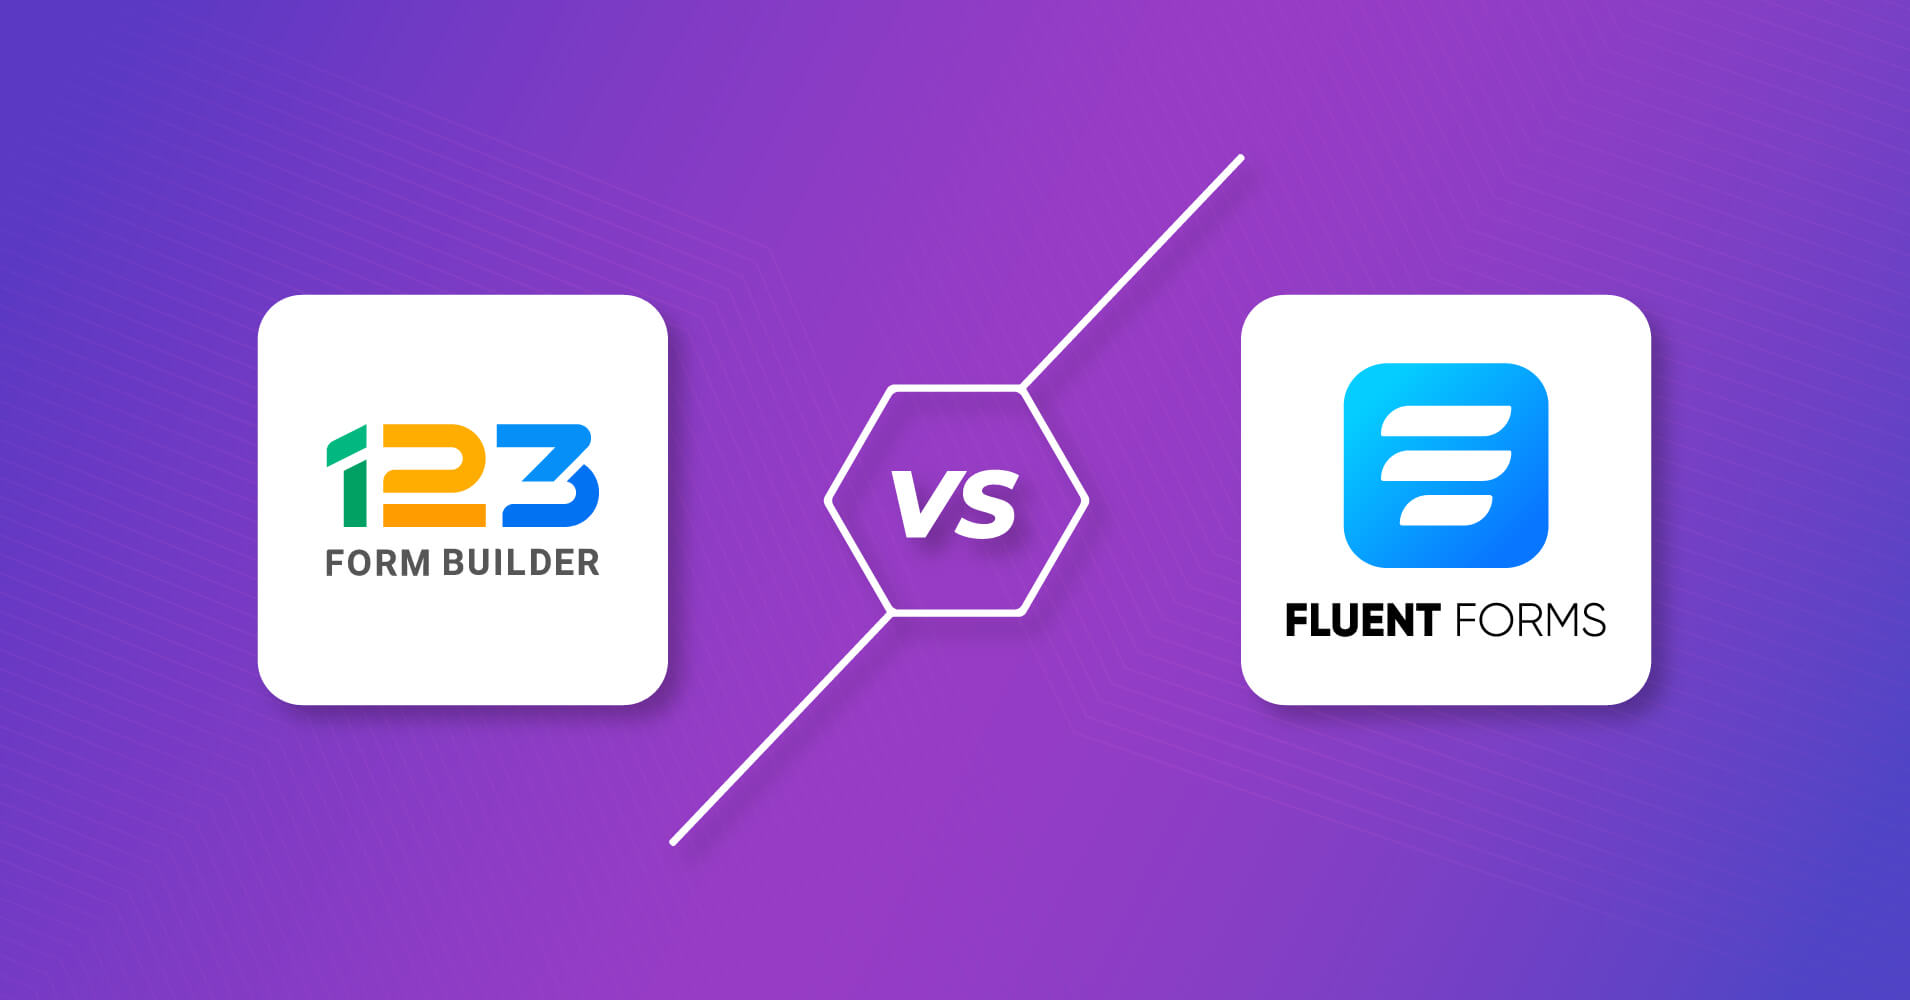 123 Form Builder vs Fluent Forms